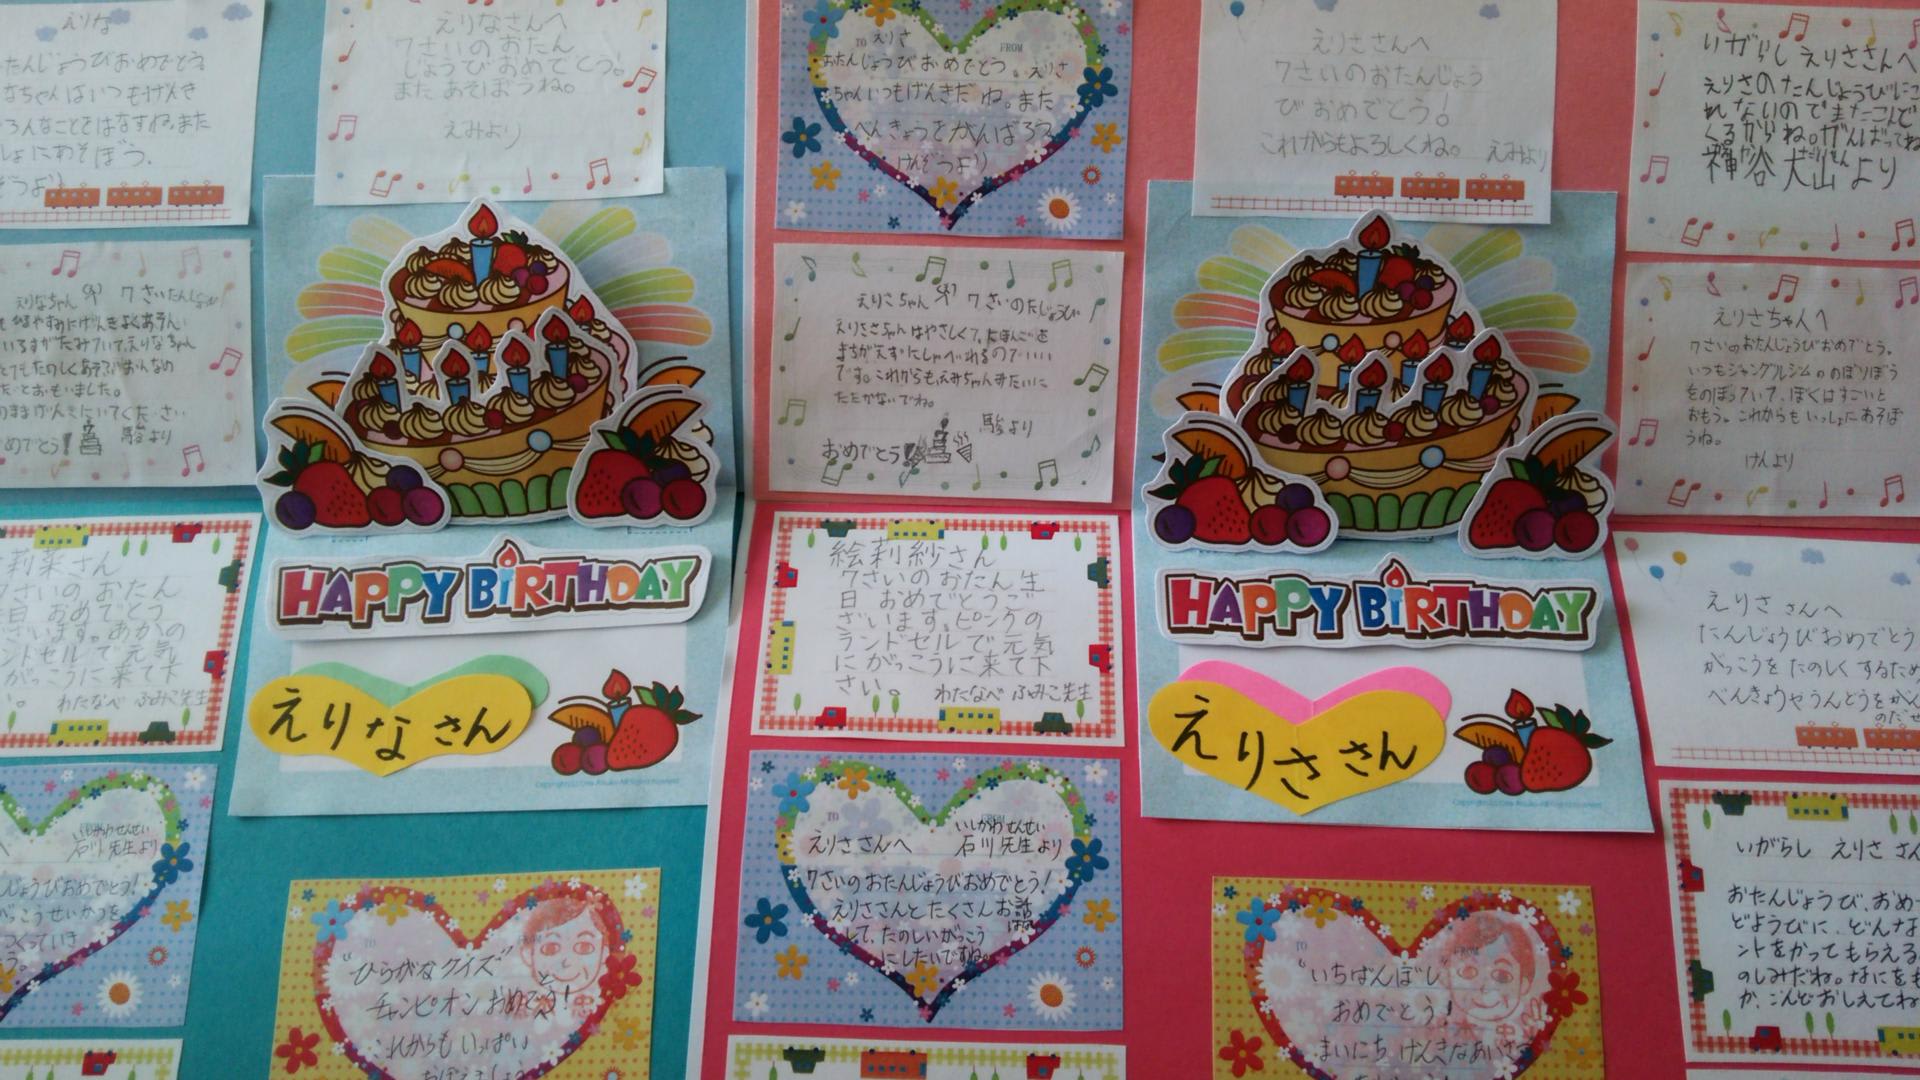 ７歳のお誕生日 おめでとう 校長室日記 グァテマラ日本人学校in中米